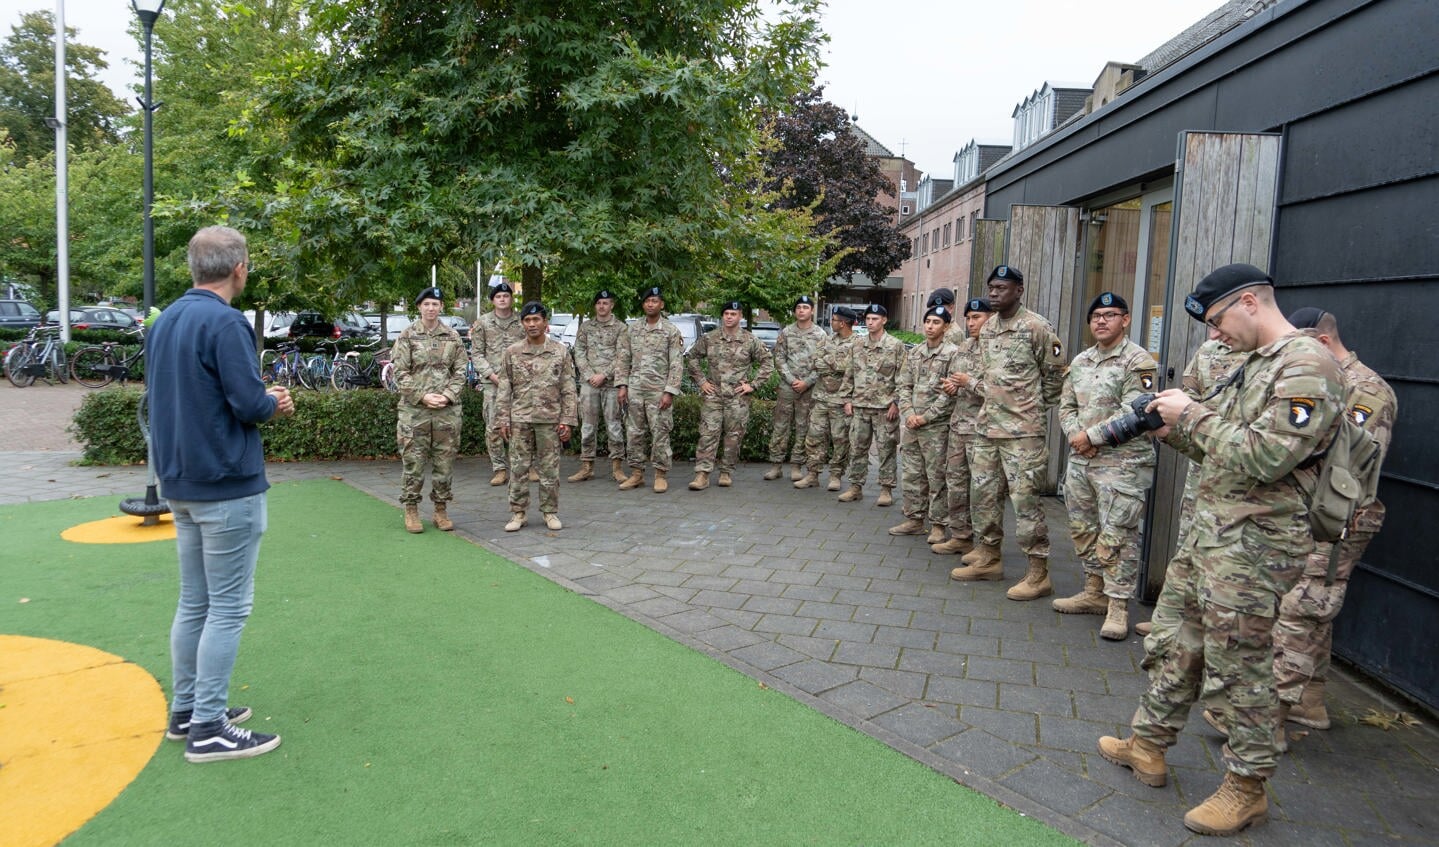 101st Aiborne Division op bezoek in Wijbosch.